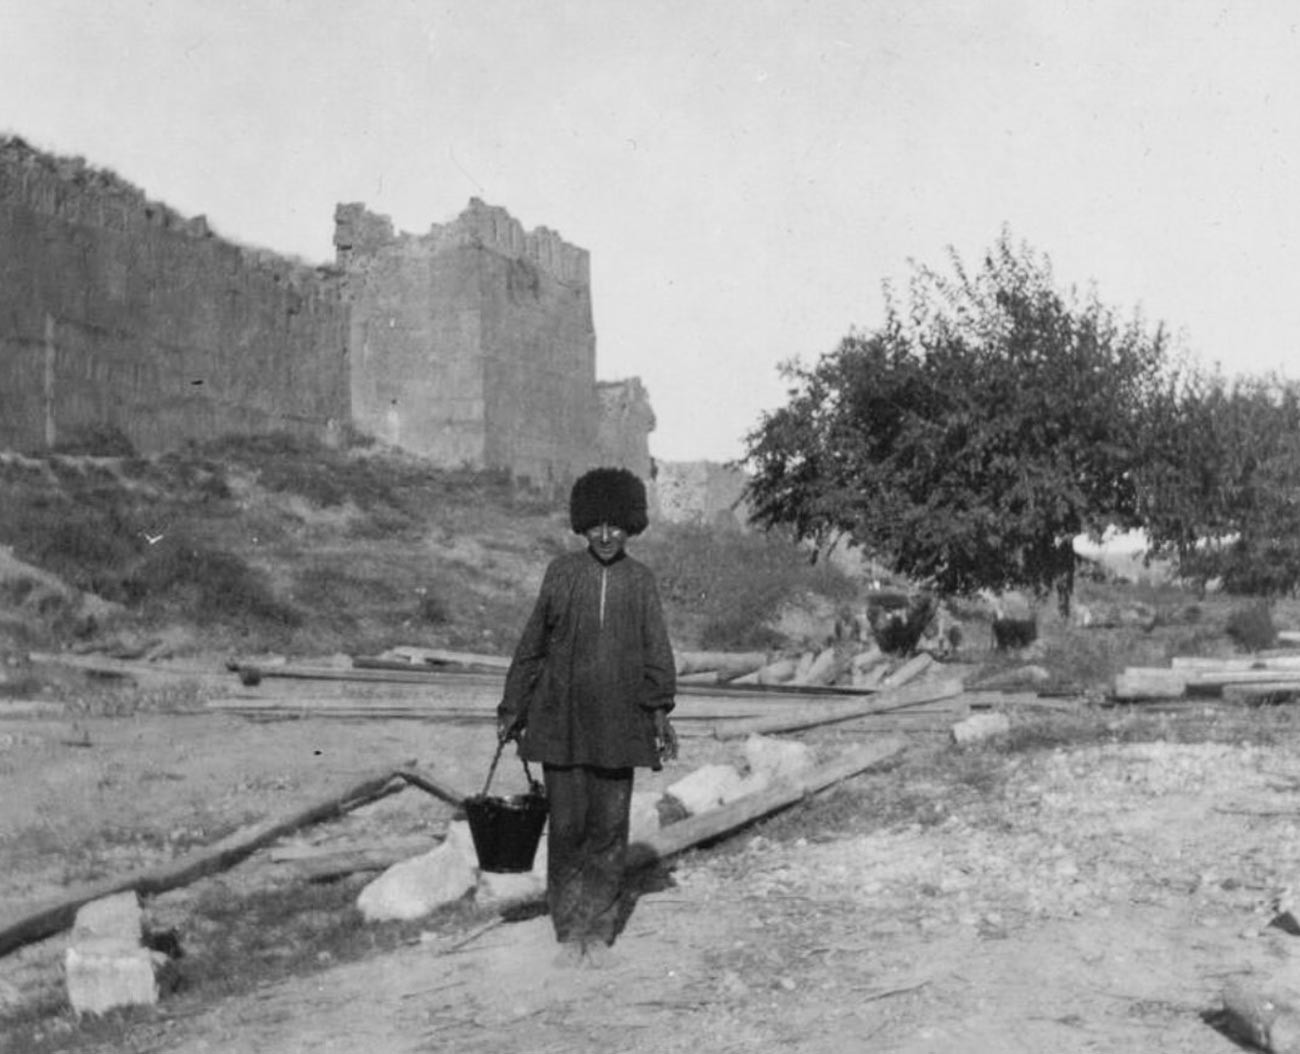 Les fortifications que l'on rencontre en visitant Derbent ont été érigées pour se défendre contre les attaques constantes des nomades – les Huns et les Khazars – au cours des V-VI siècles.